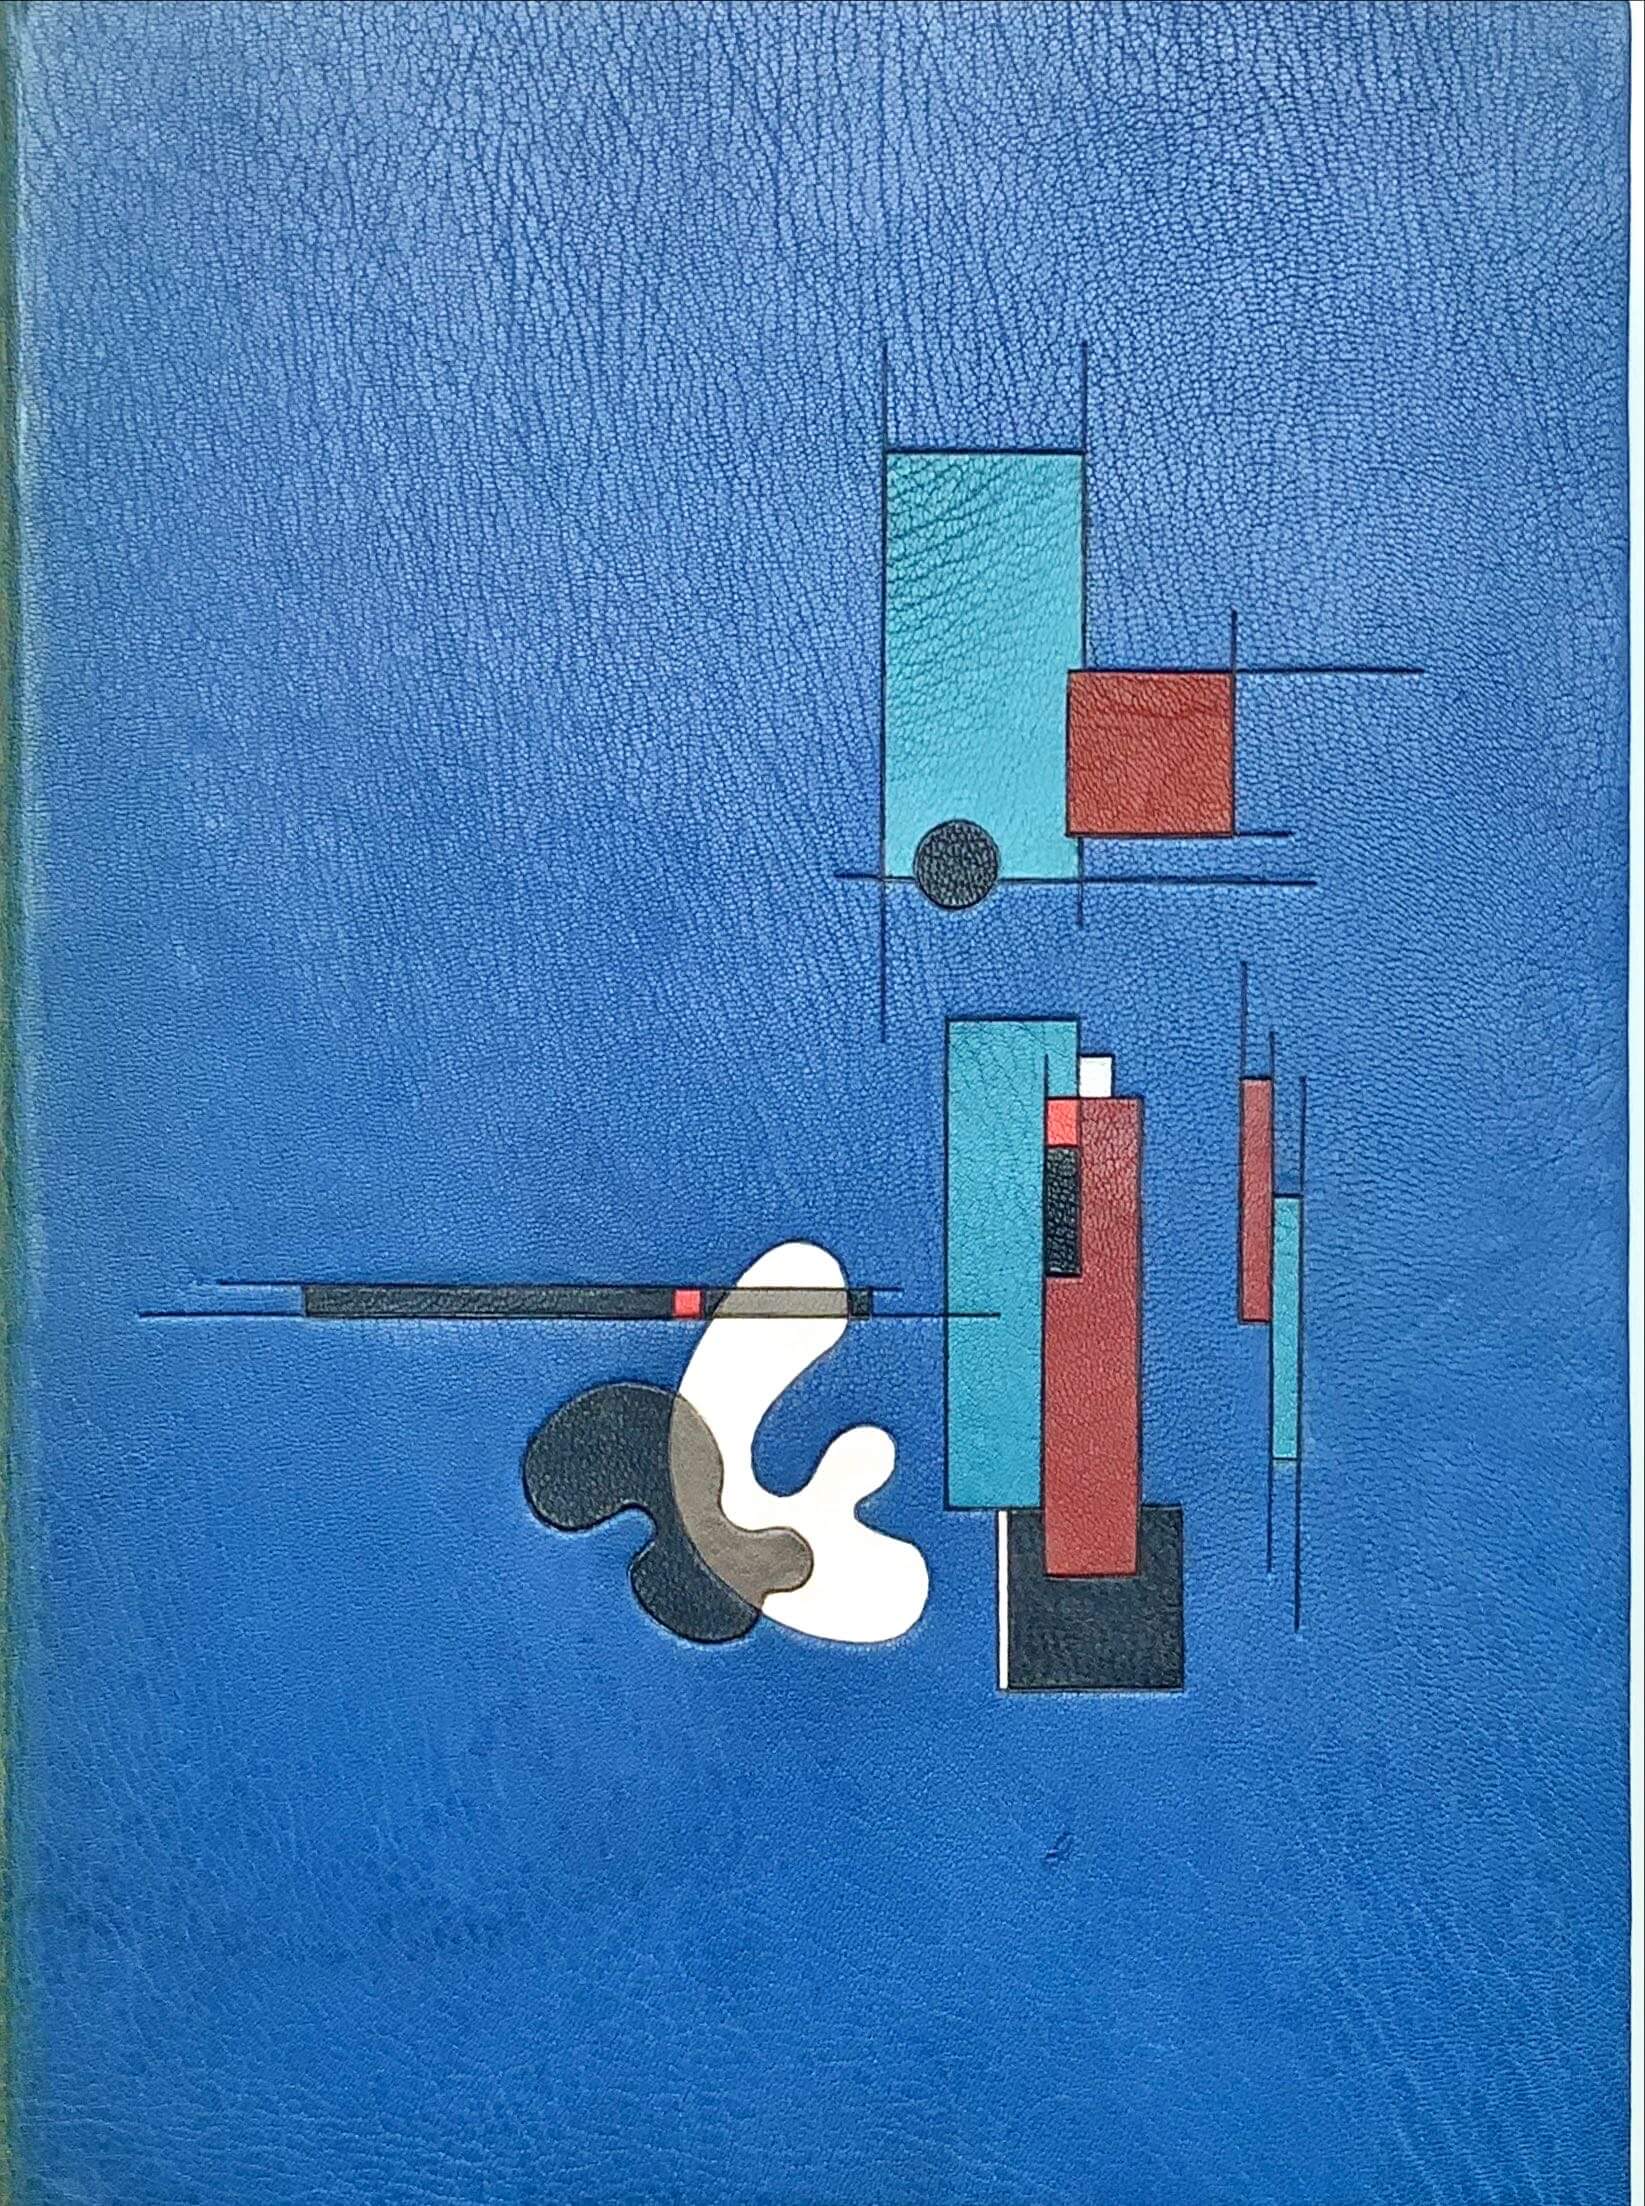 Conzett & Huber: Picasso's World of Children. by Helen Kay. 1965